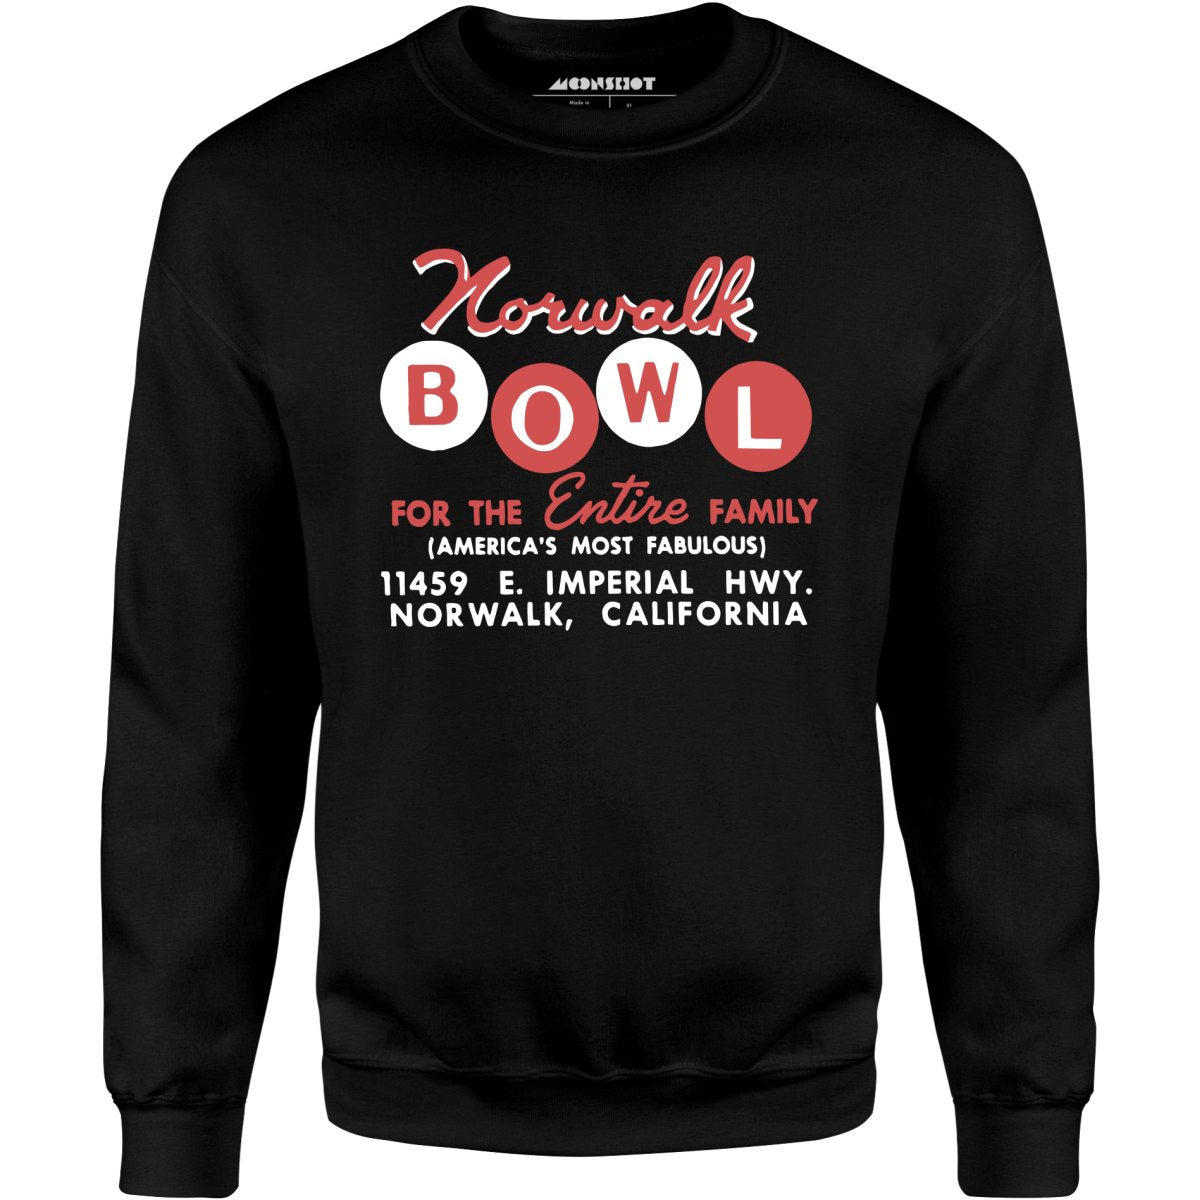 Norwalk Bowl - Norwalk, CA - Vintage Bowling Alley - Unisex Sweatshirt